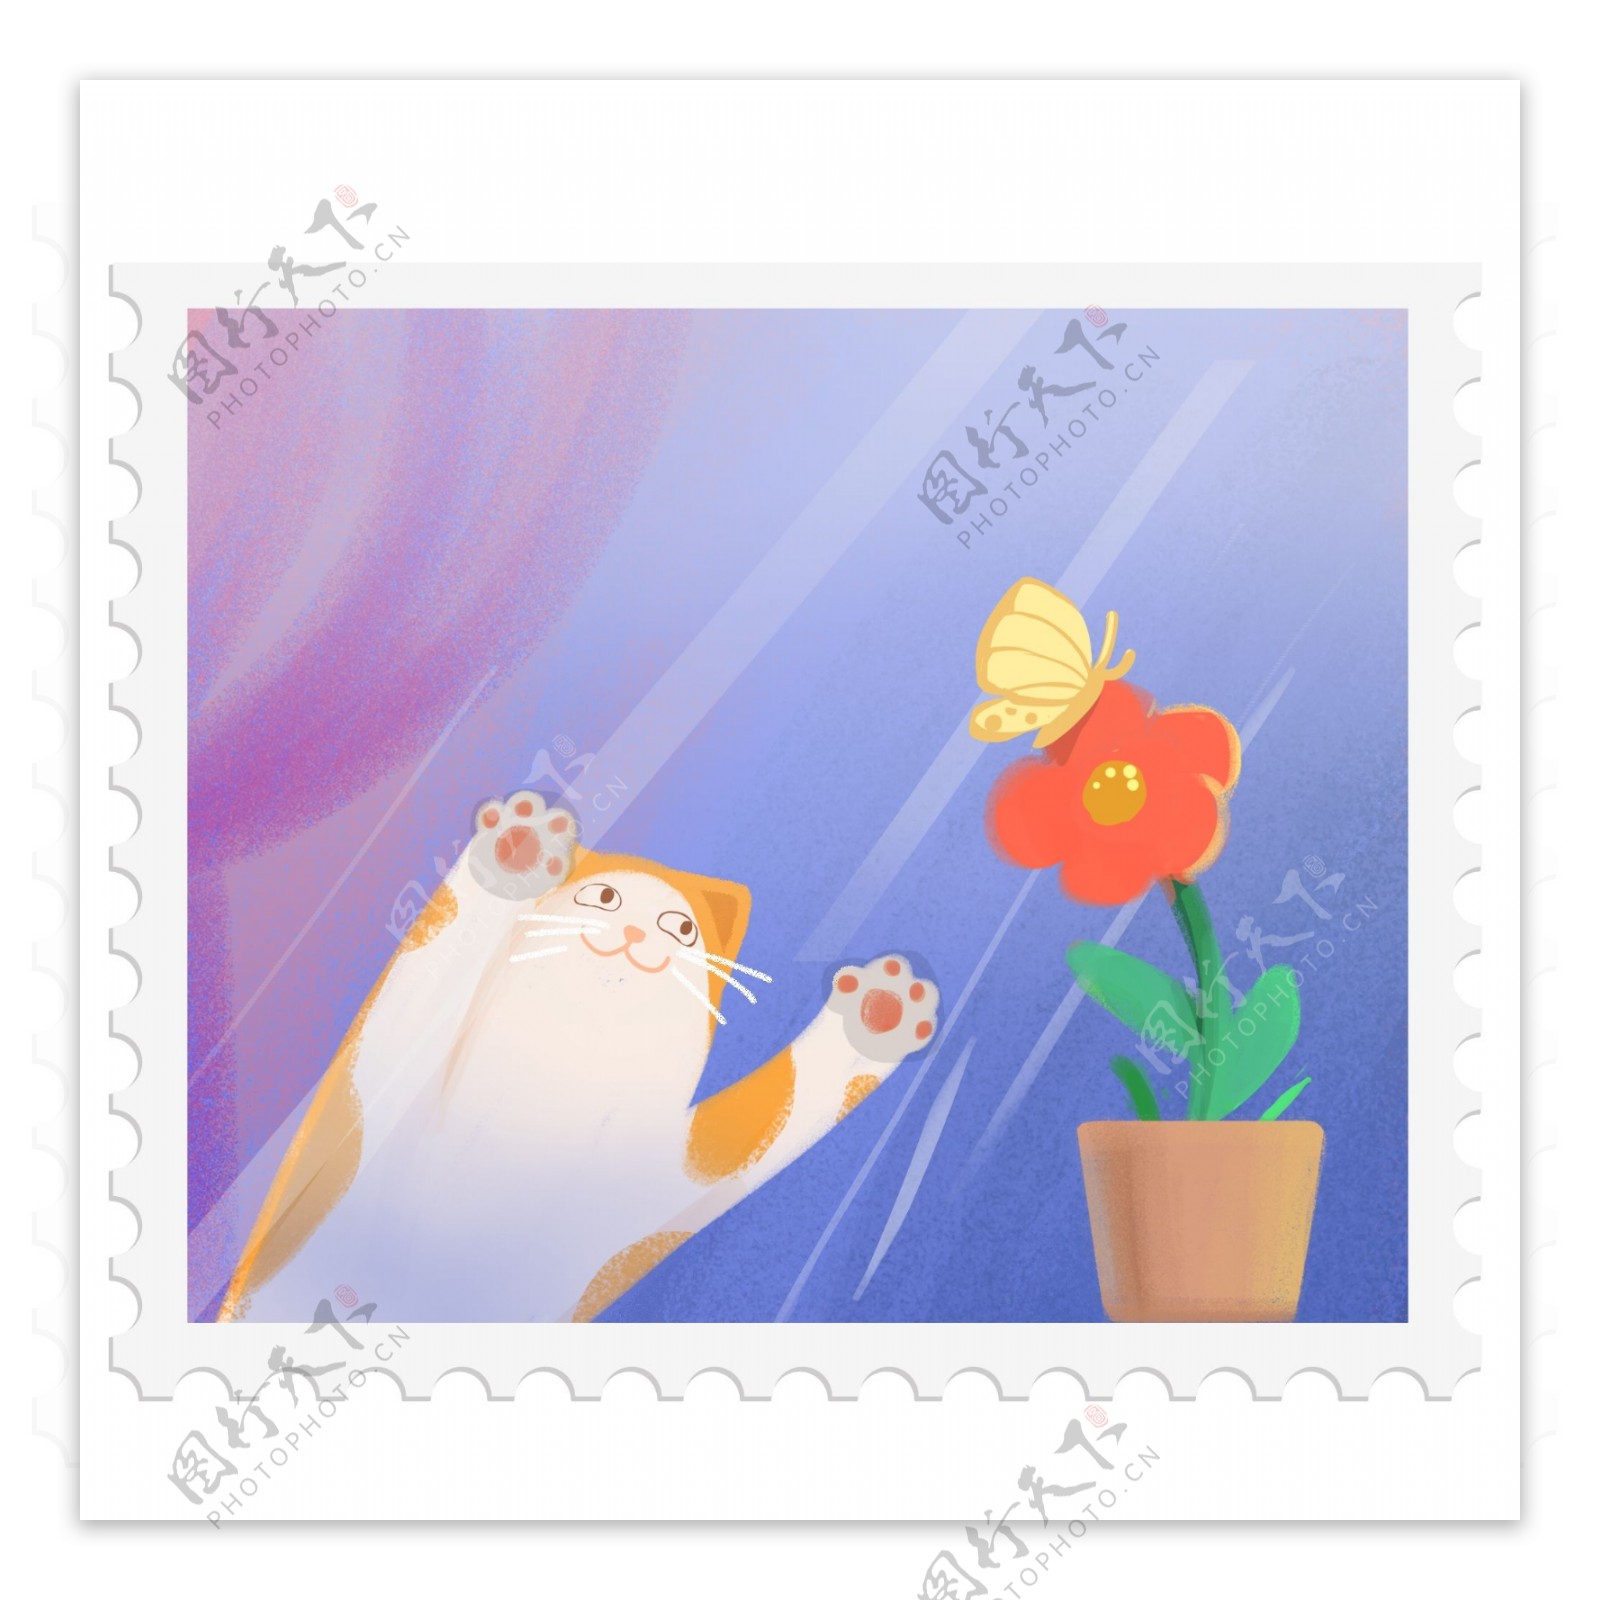 猫咪花朵邮票